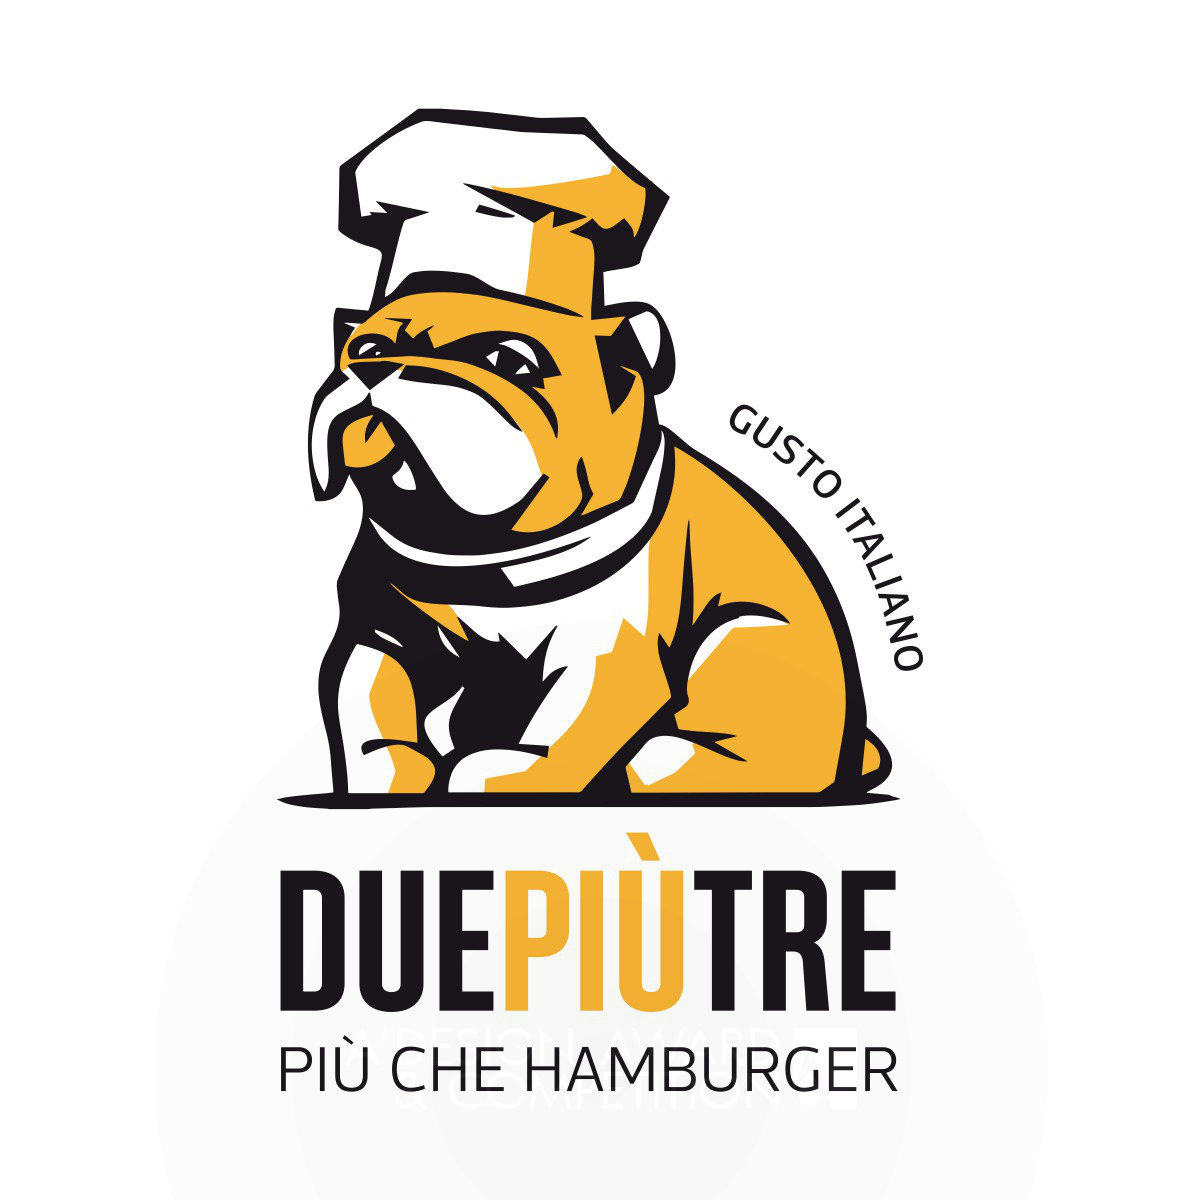 DuePiuTre – Piu che Hamburger Visual Identity by Laura Ferrario